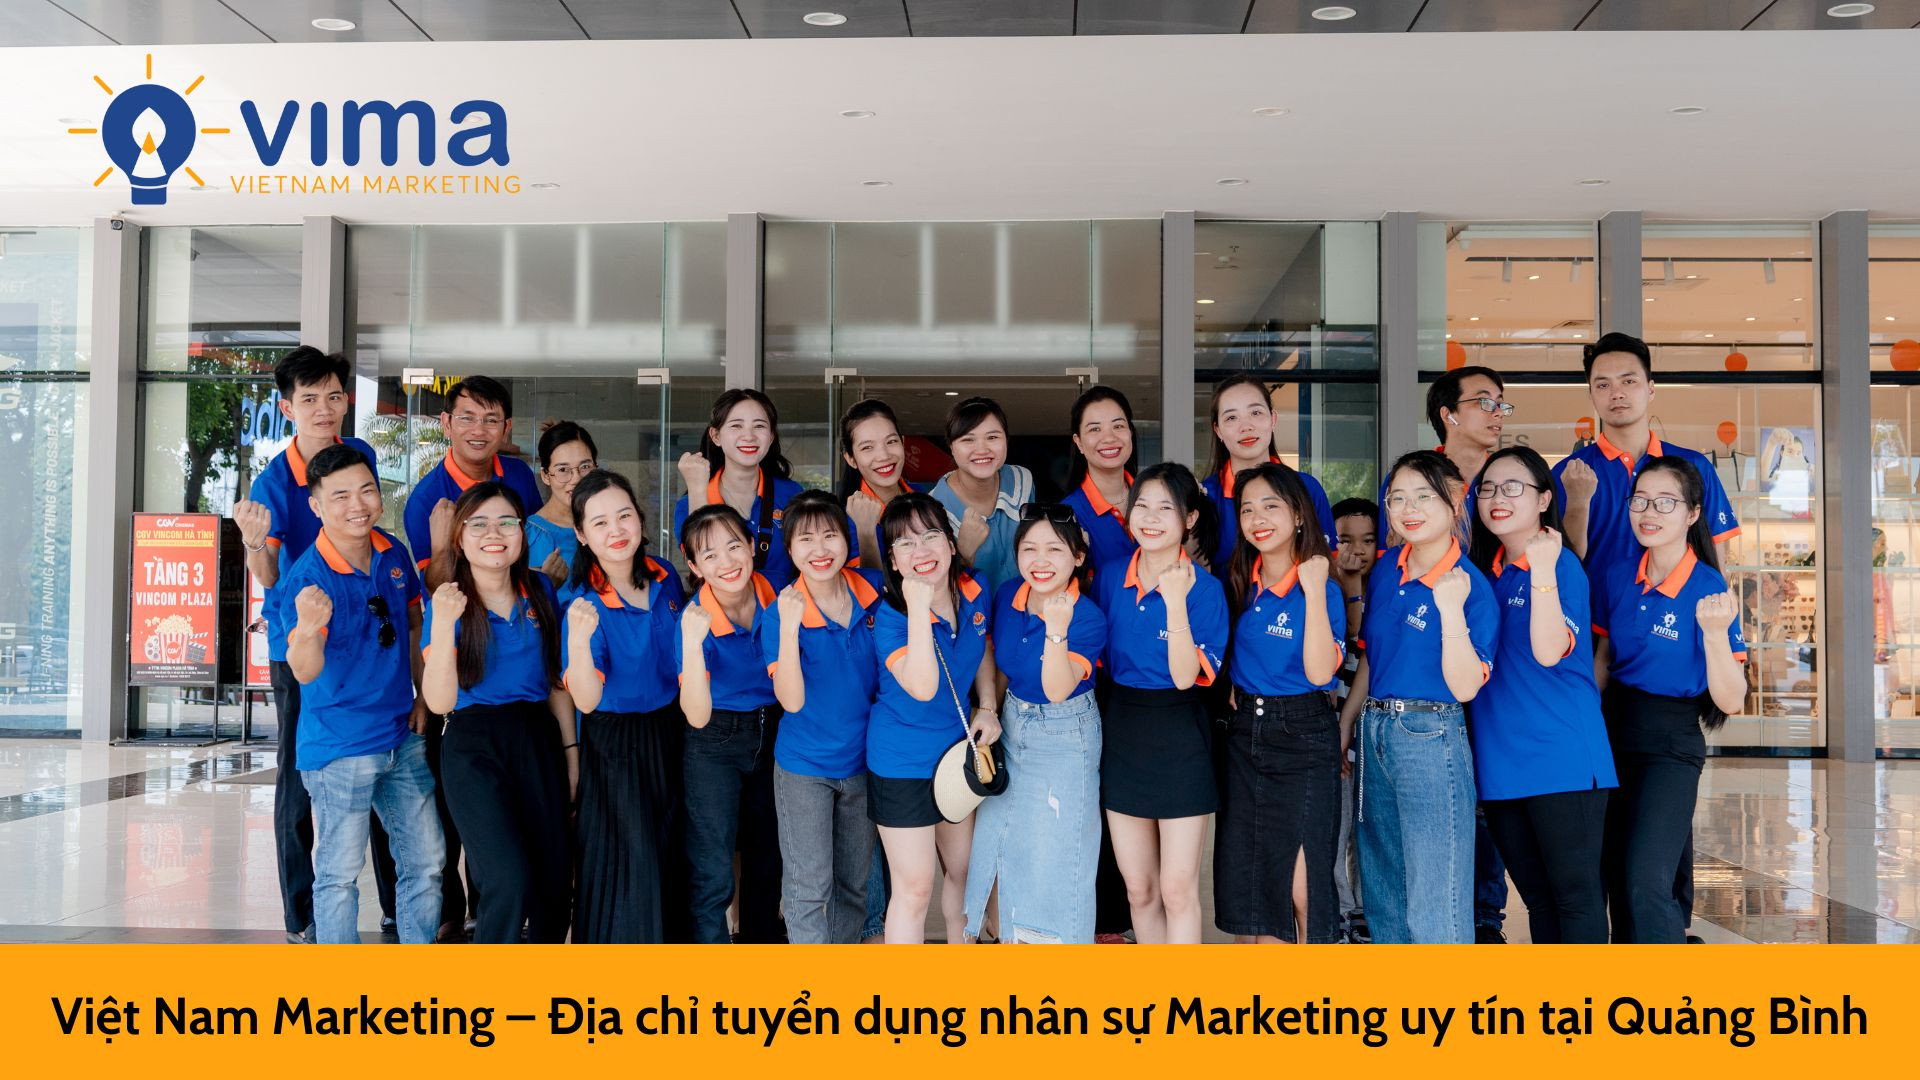 Việt Nam Marketing – Địa chỉ tuyển dụng nhân sự Marketing uy tín tại Quảng Bình